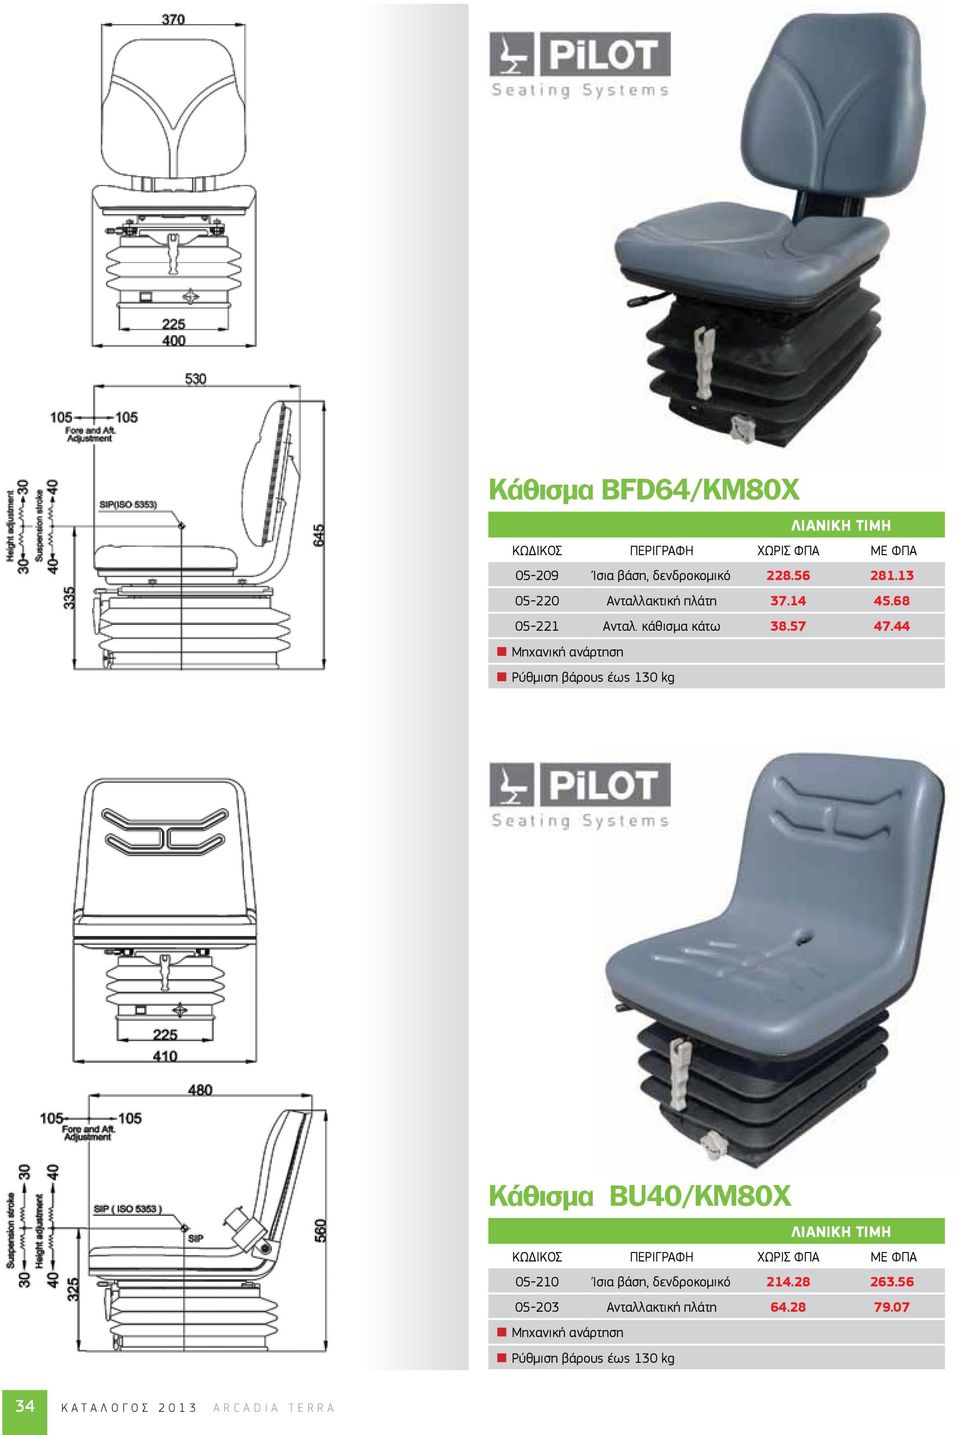 44 Μηχανική ανάρτηση Ρύθμιση βάρους έως 130 kg Κάθισμα BU40/KM80X 05-210 Ίσια βάση,